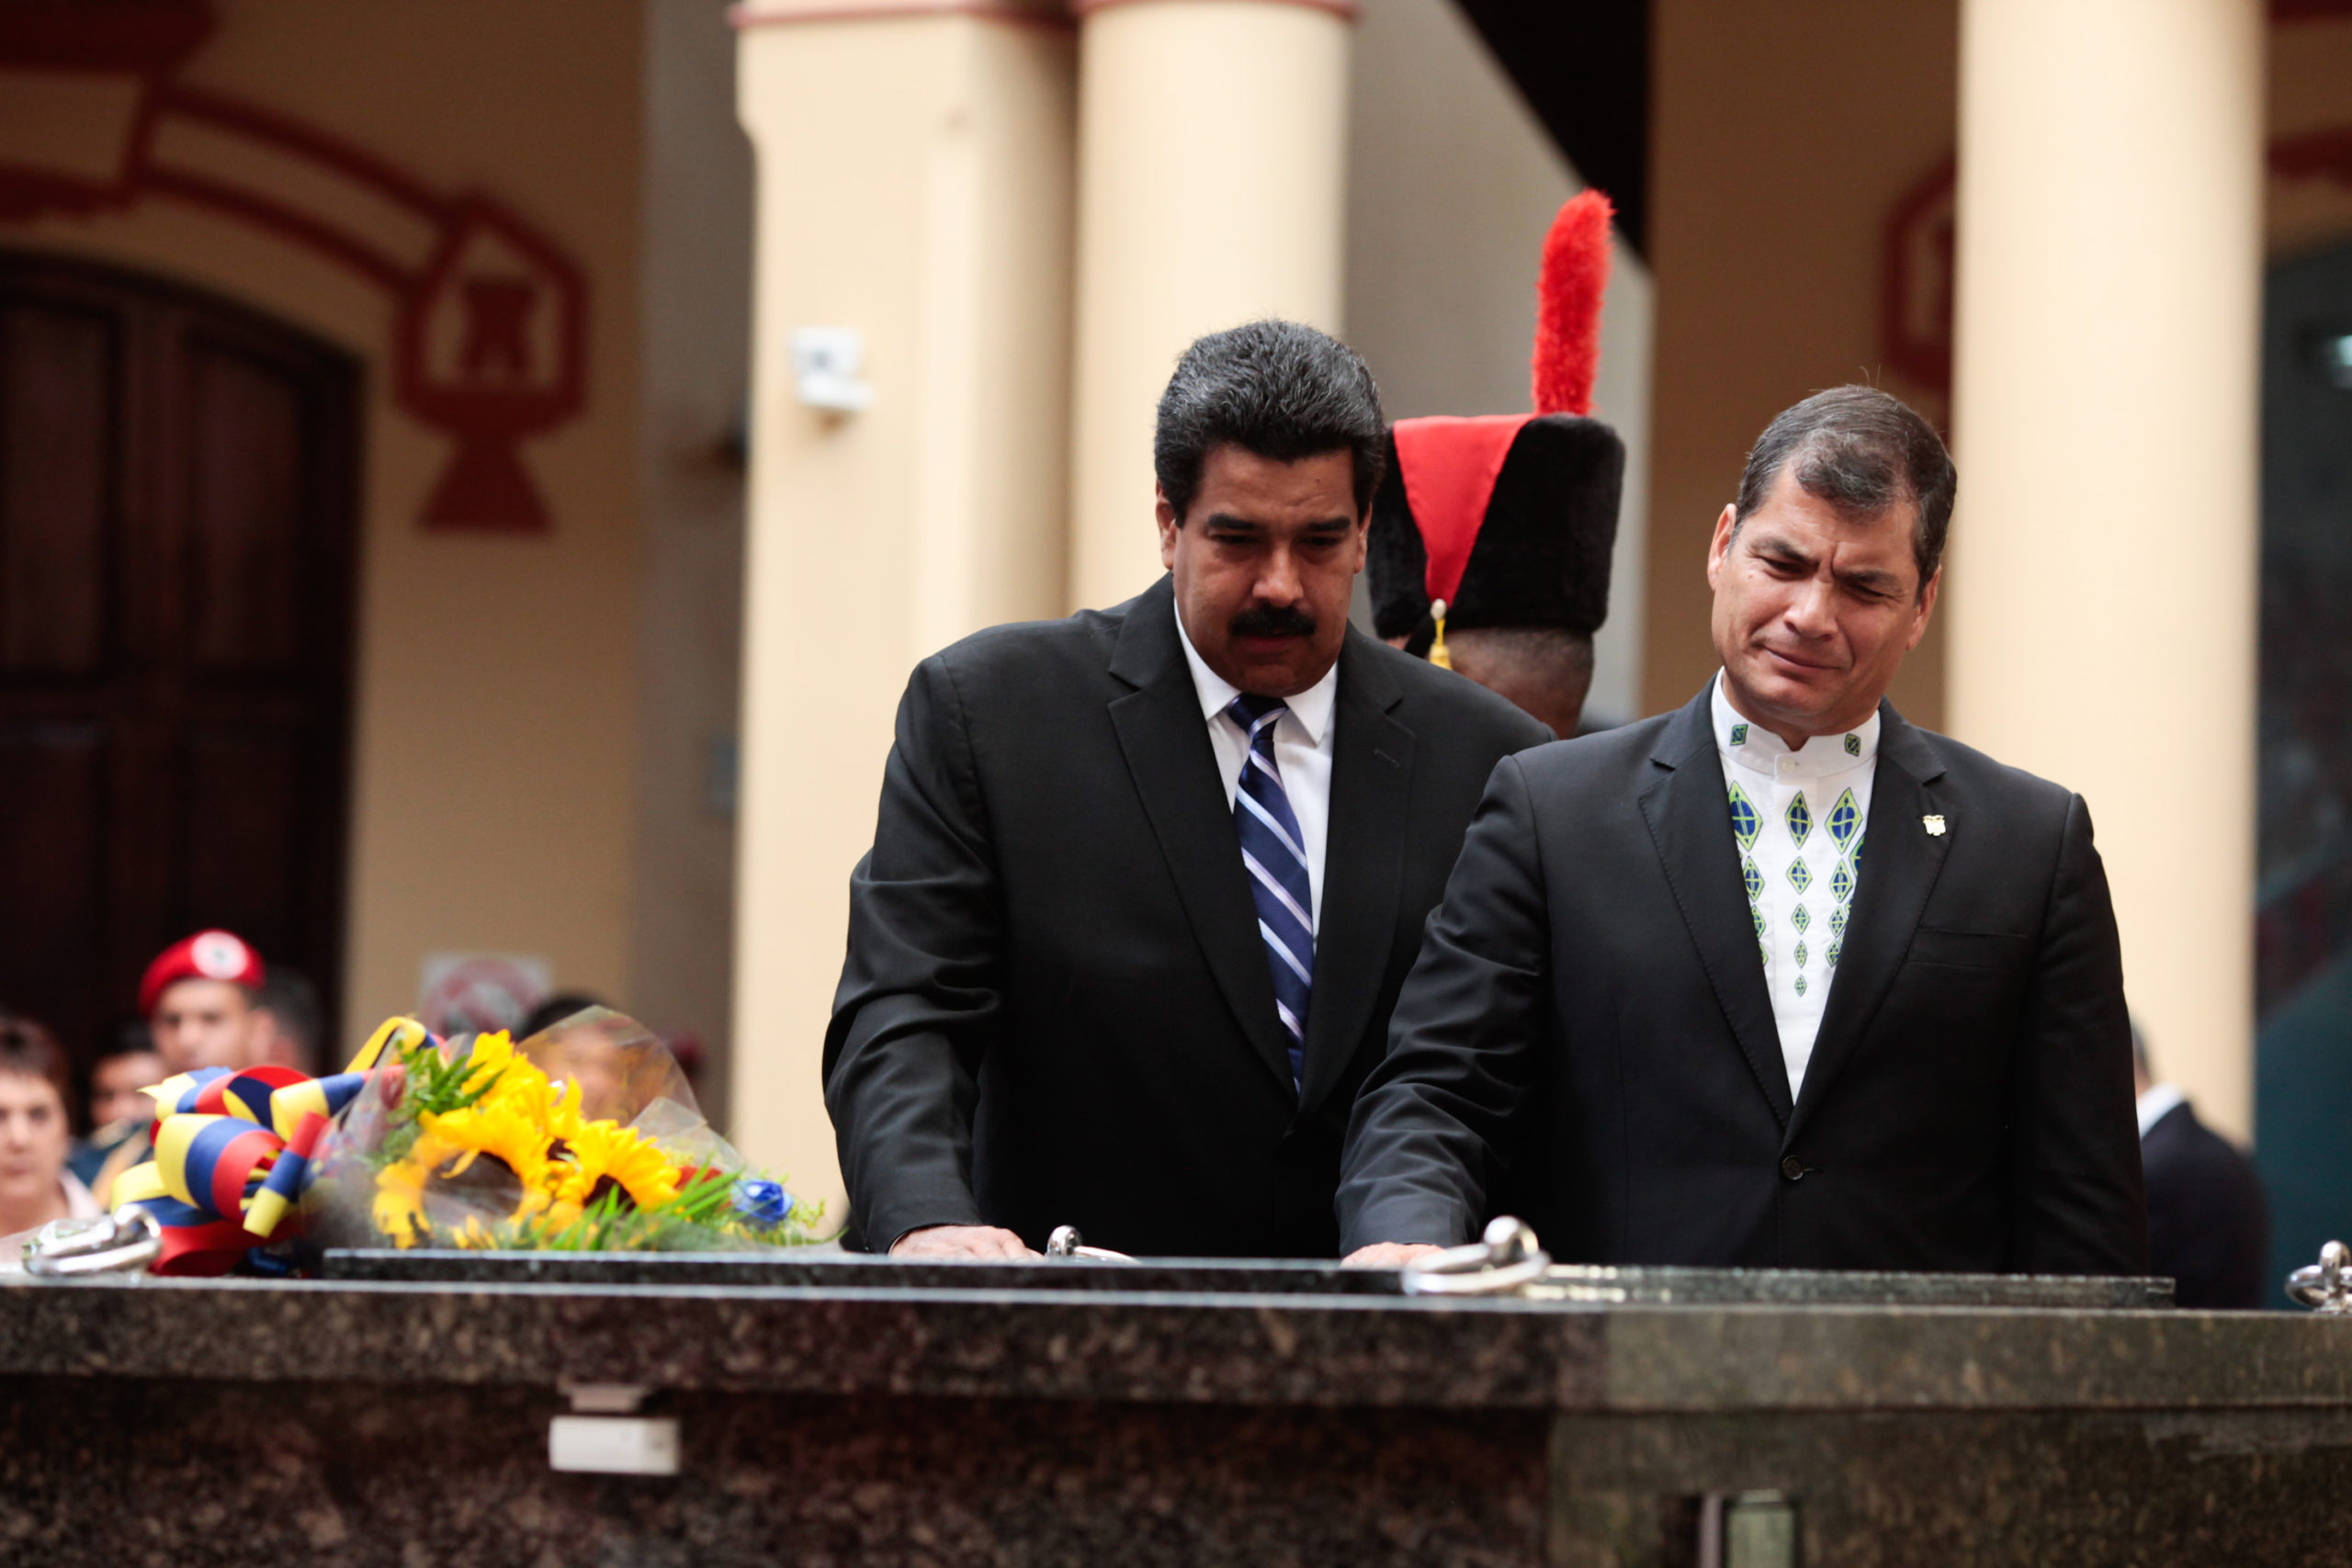 Candidato de Rafael Correa es pieza clave del plan chavista para intervenir Ecuador, aseguran expertos